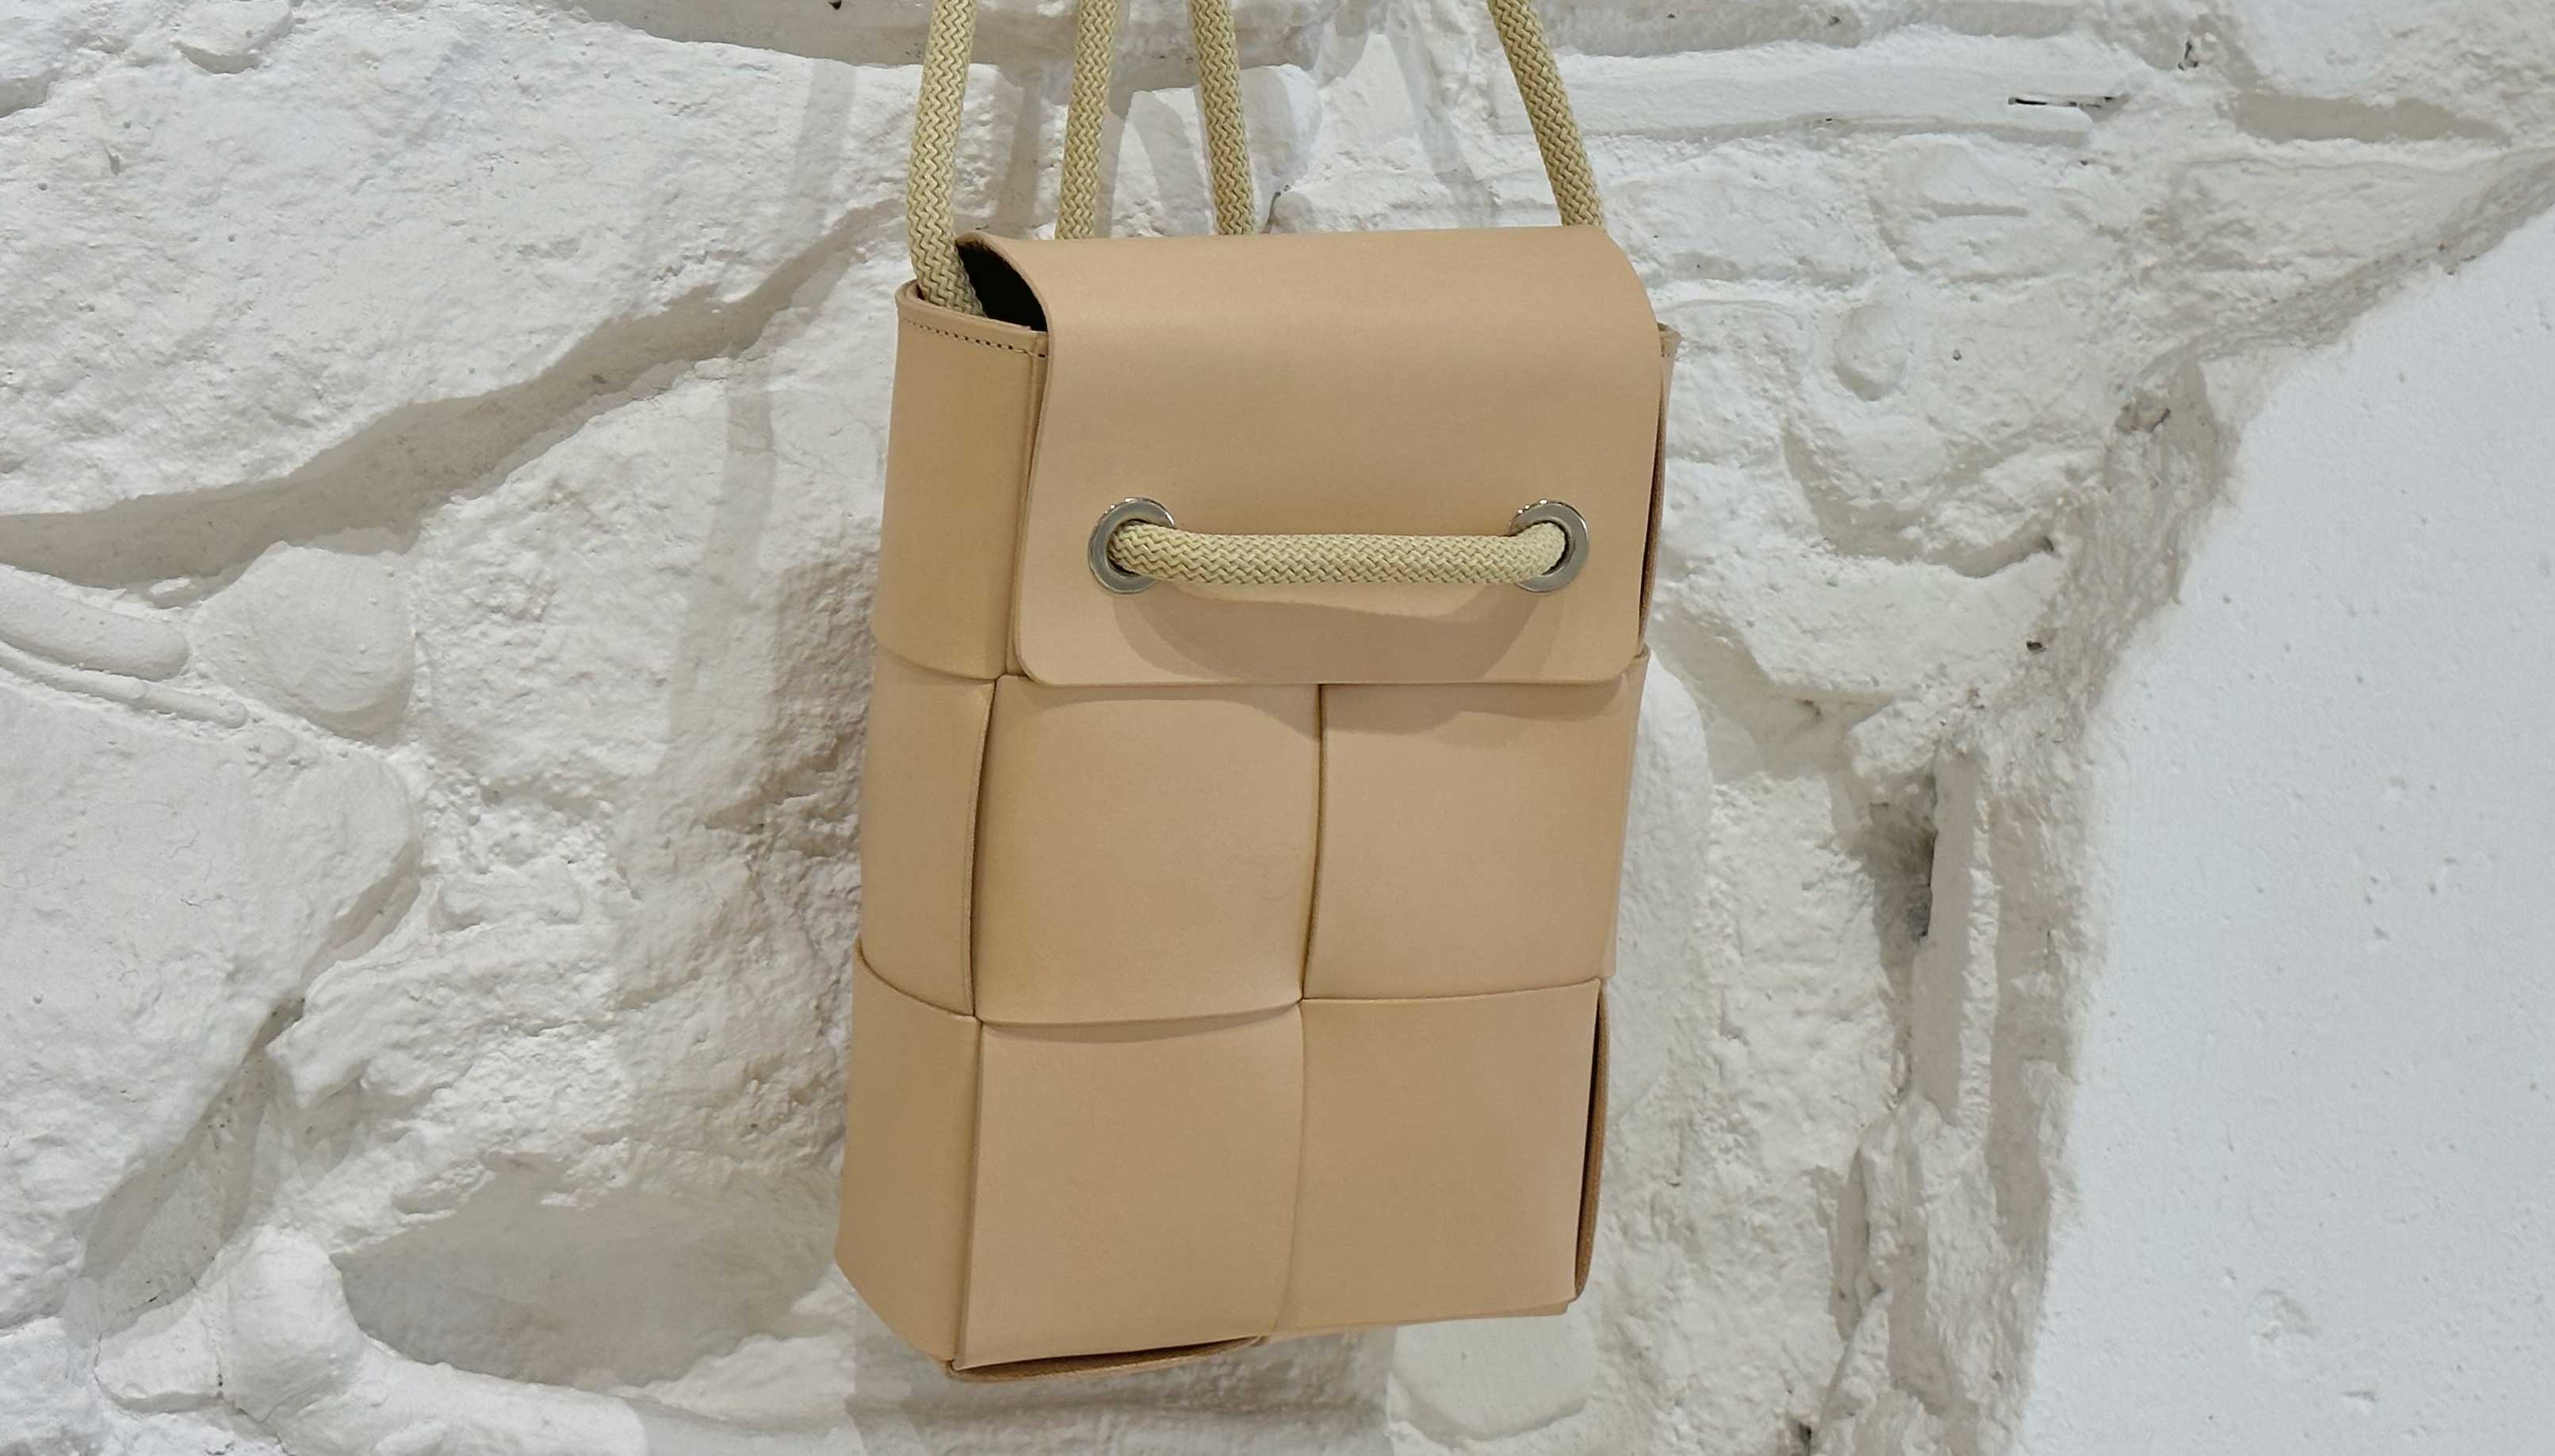 Leather Handbag | Vinkie - HANDMADE LEATHER & CORK PRODUCTS